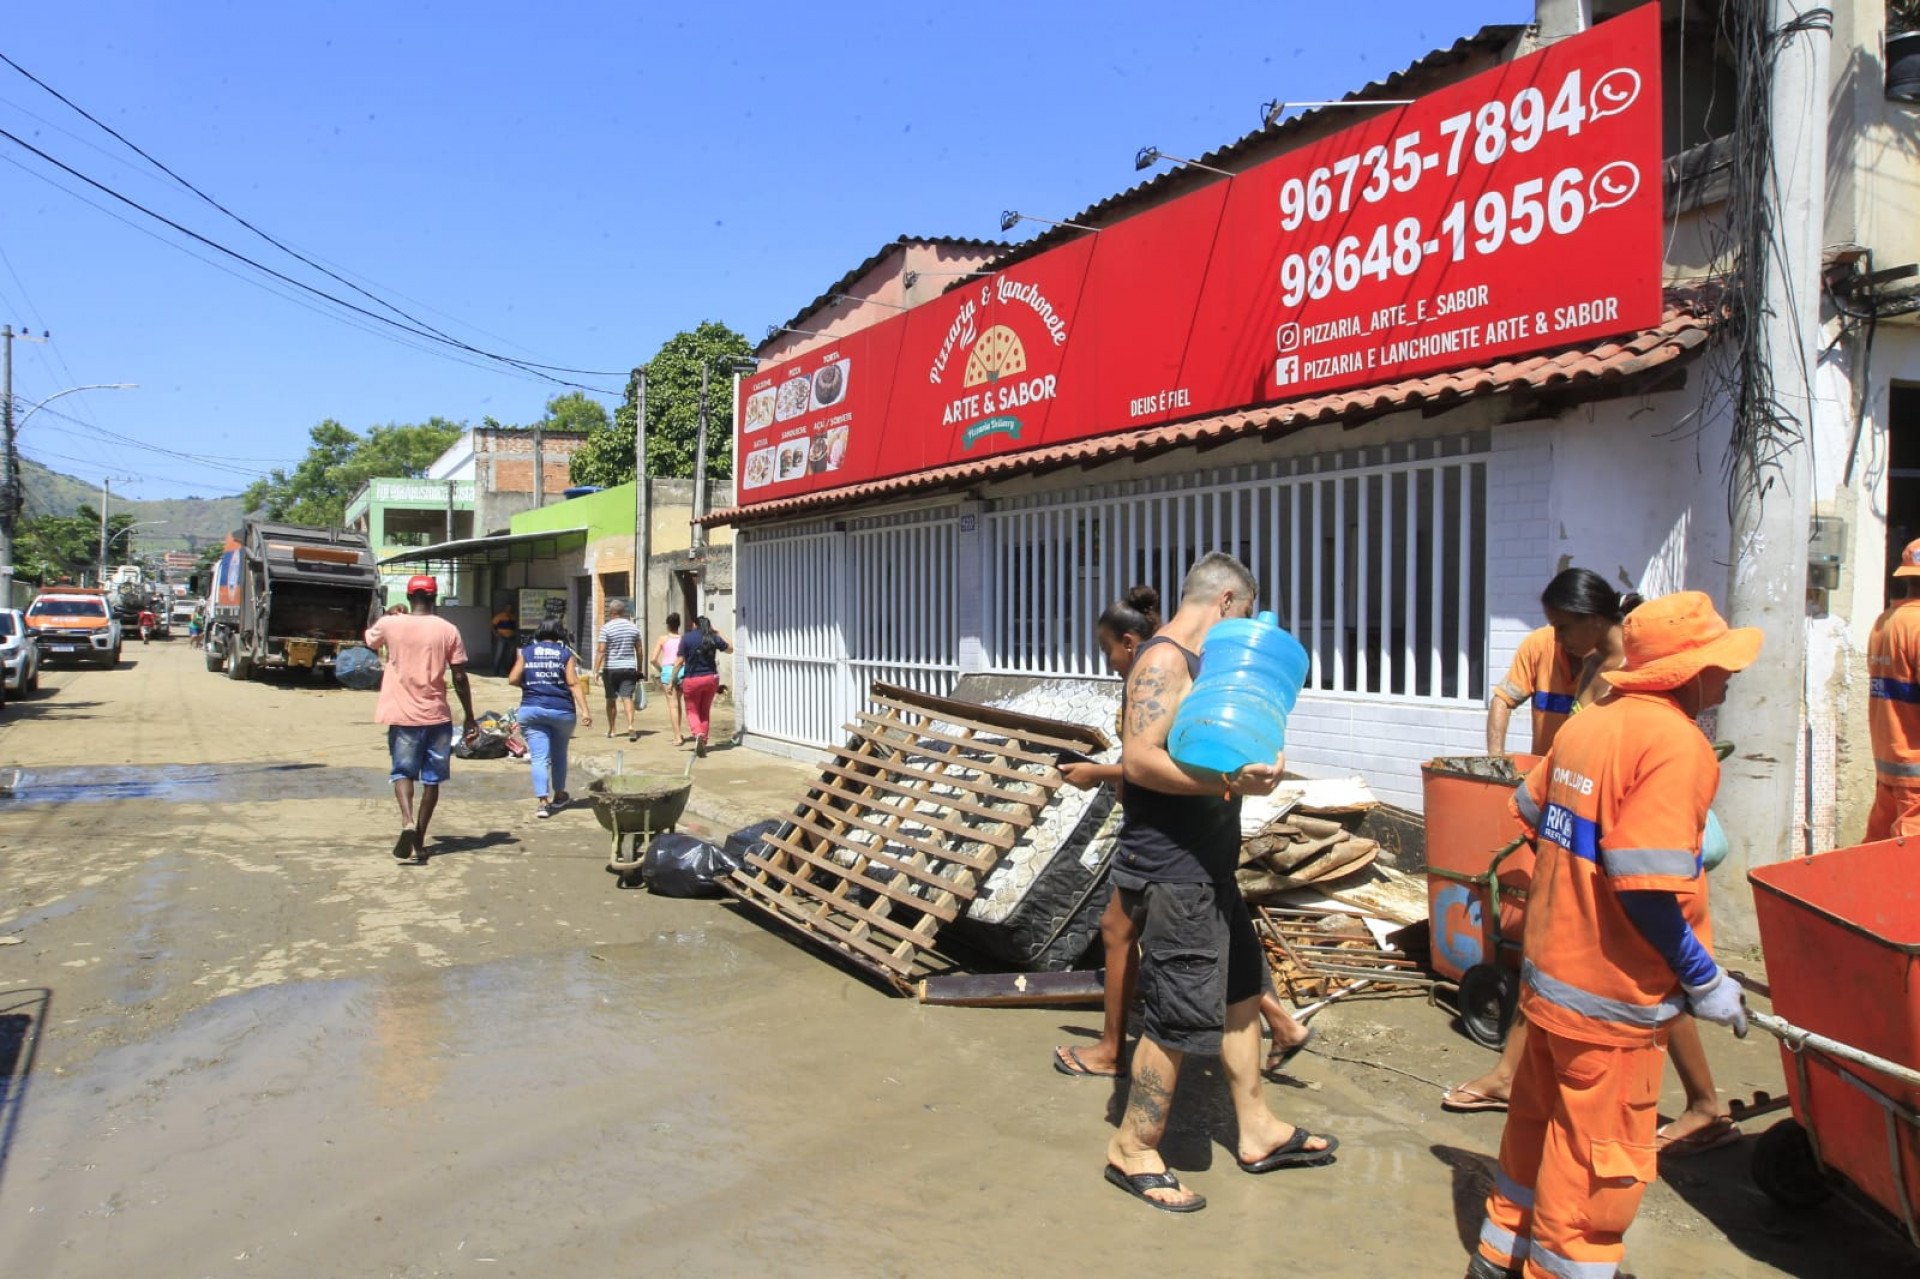 Equipes da Comlurb fazem a limpeza das ruas atingidas pelo rompimento de adutora  - Reginaldo Pimenta/Agência O Dia